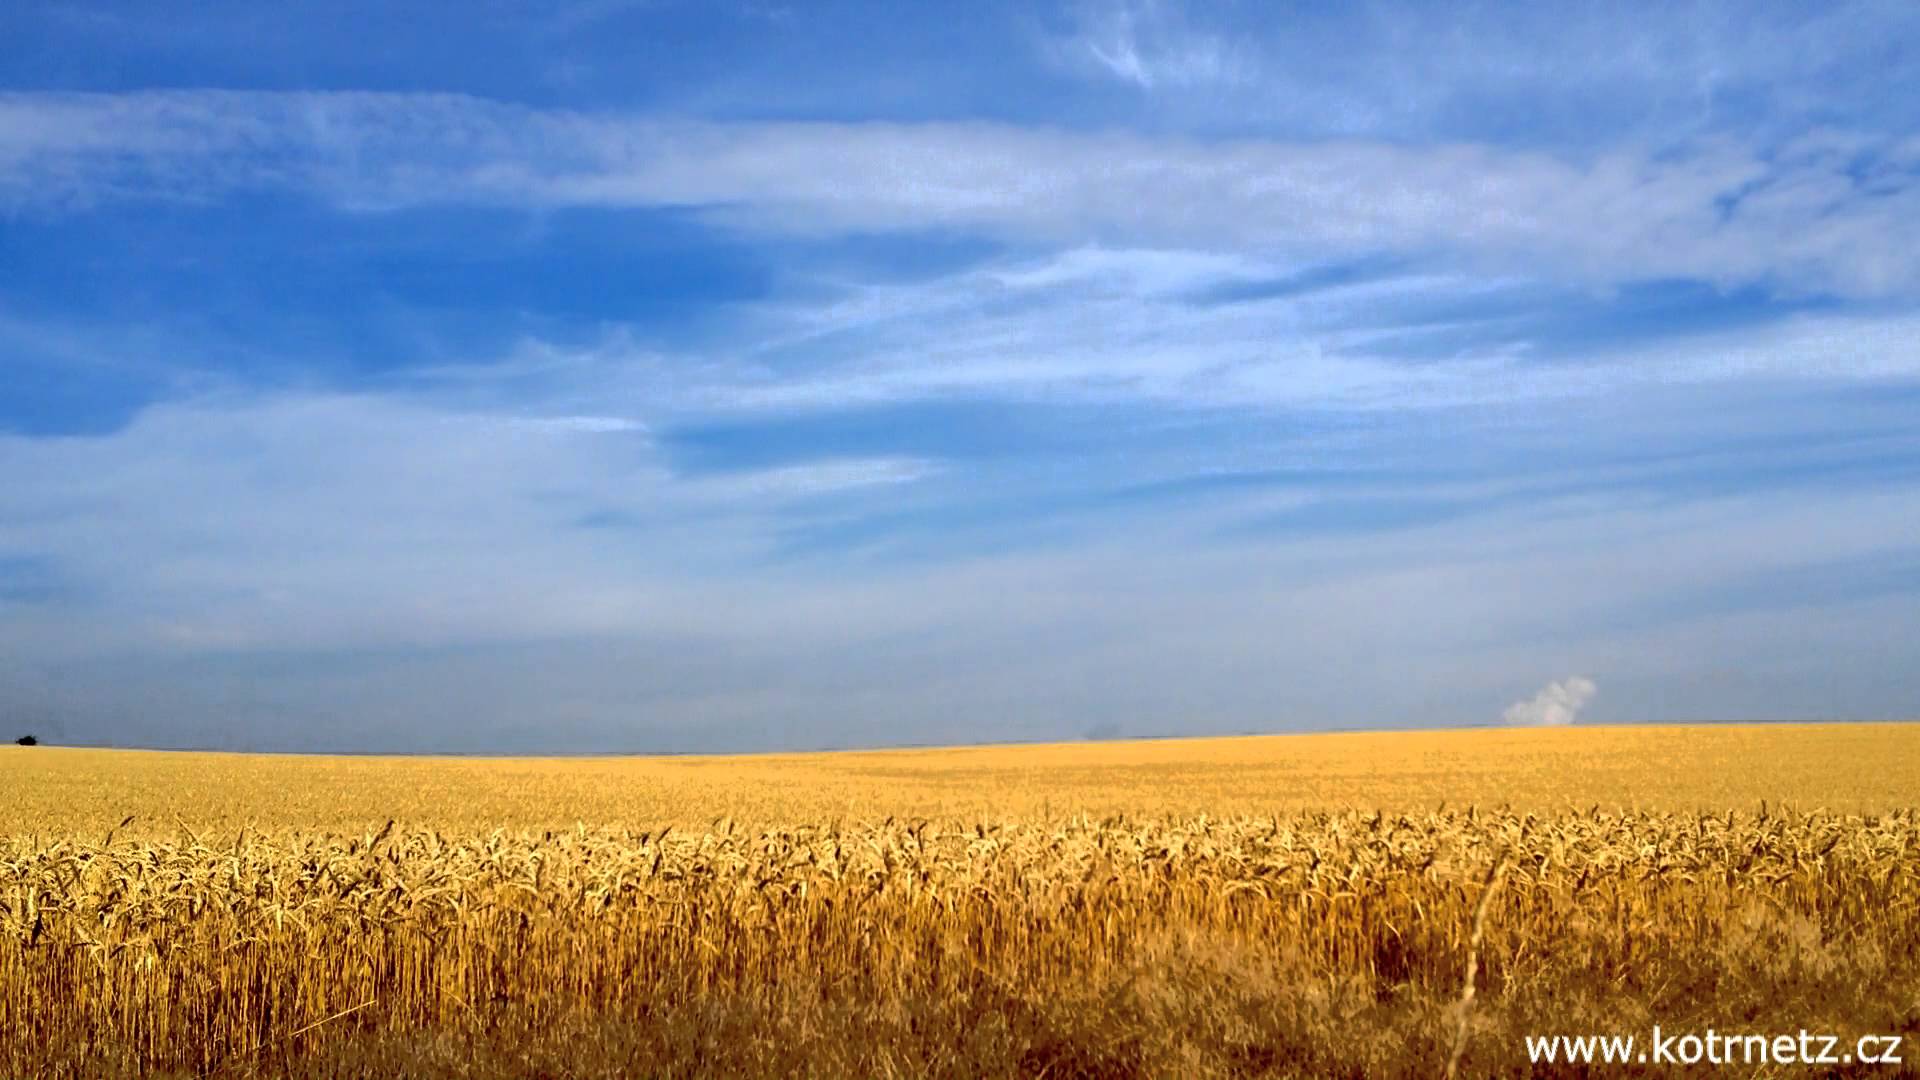 Summer grain field (1080HD) - YouTube